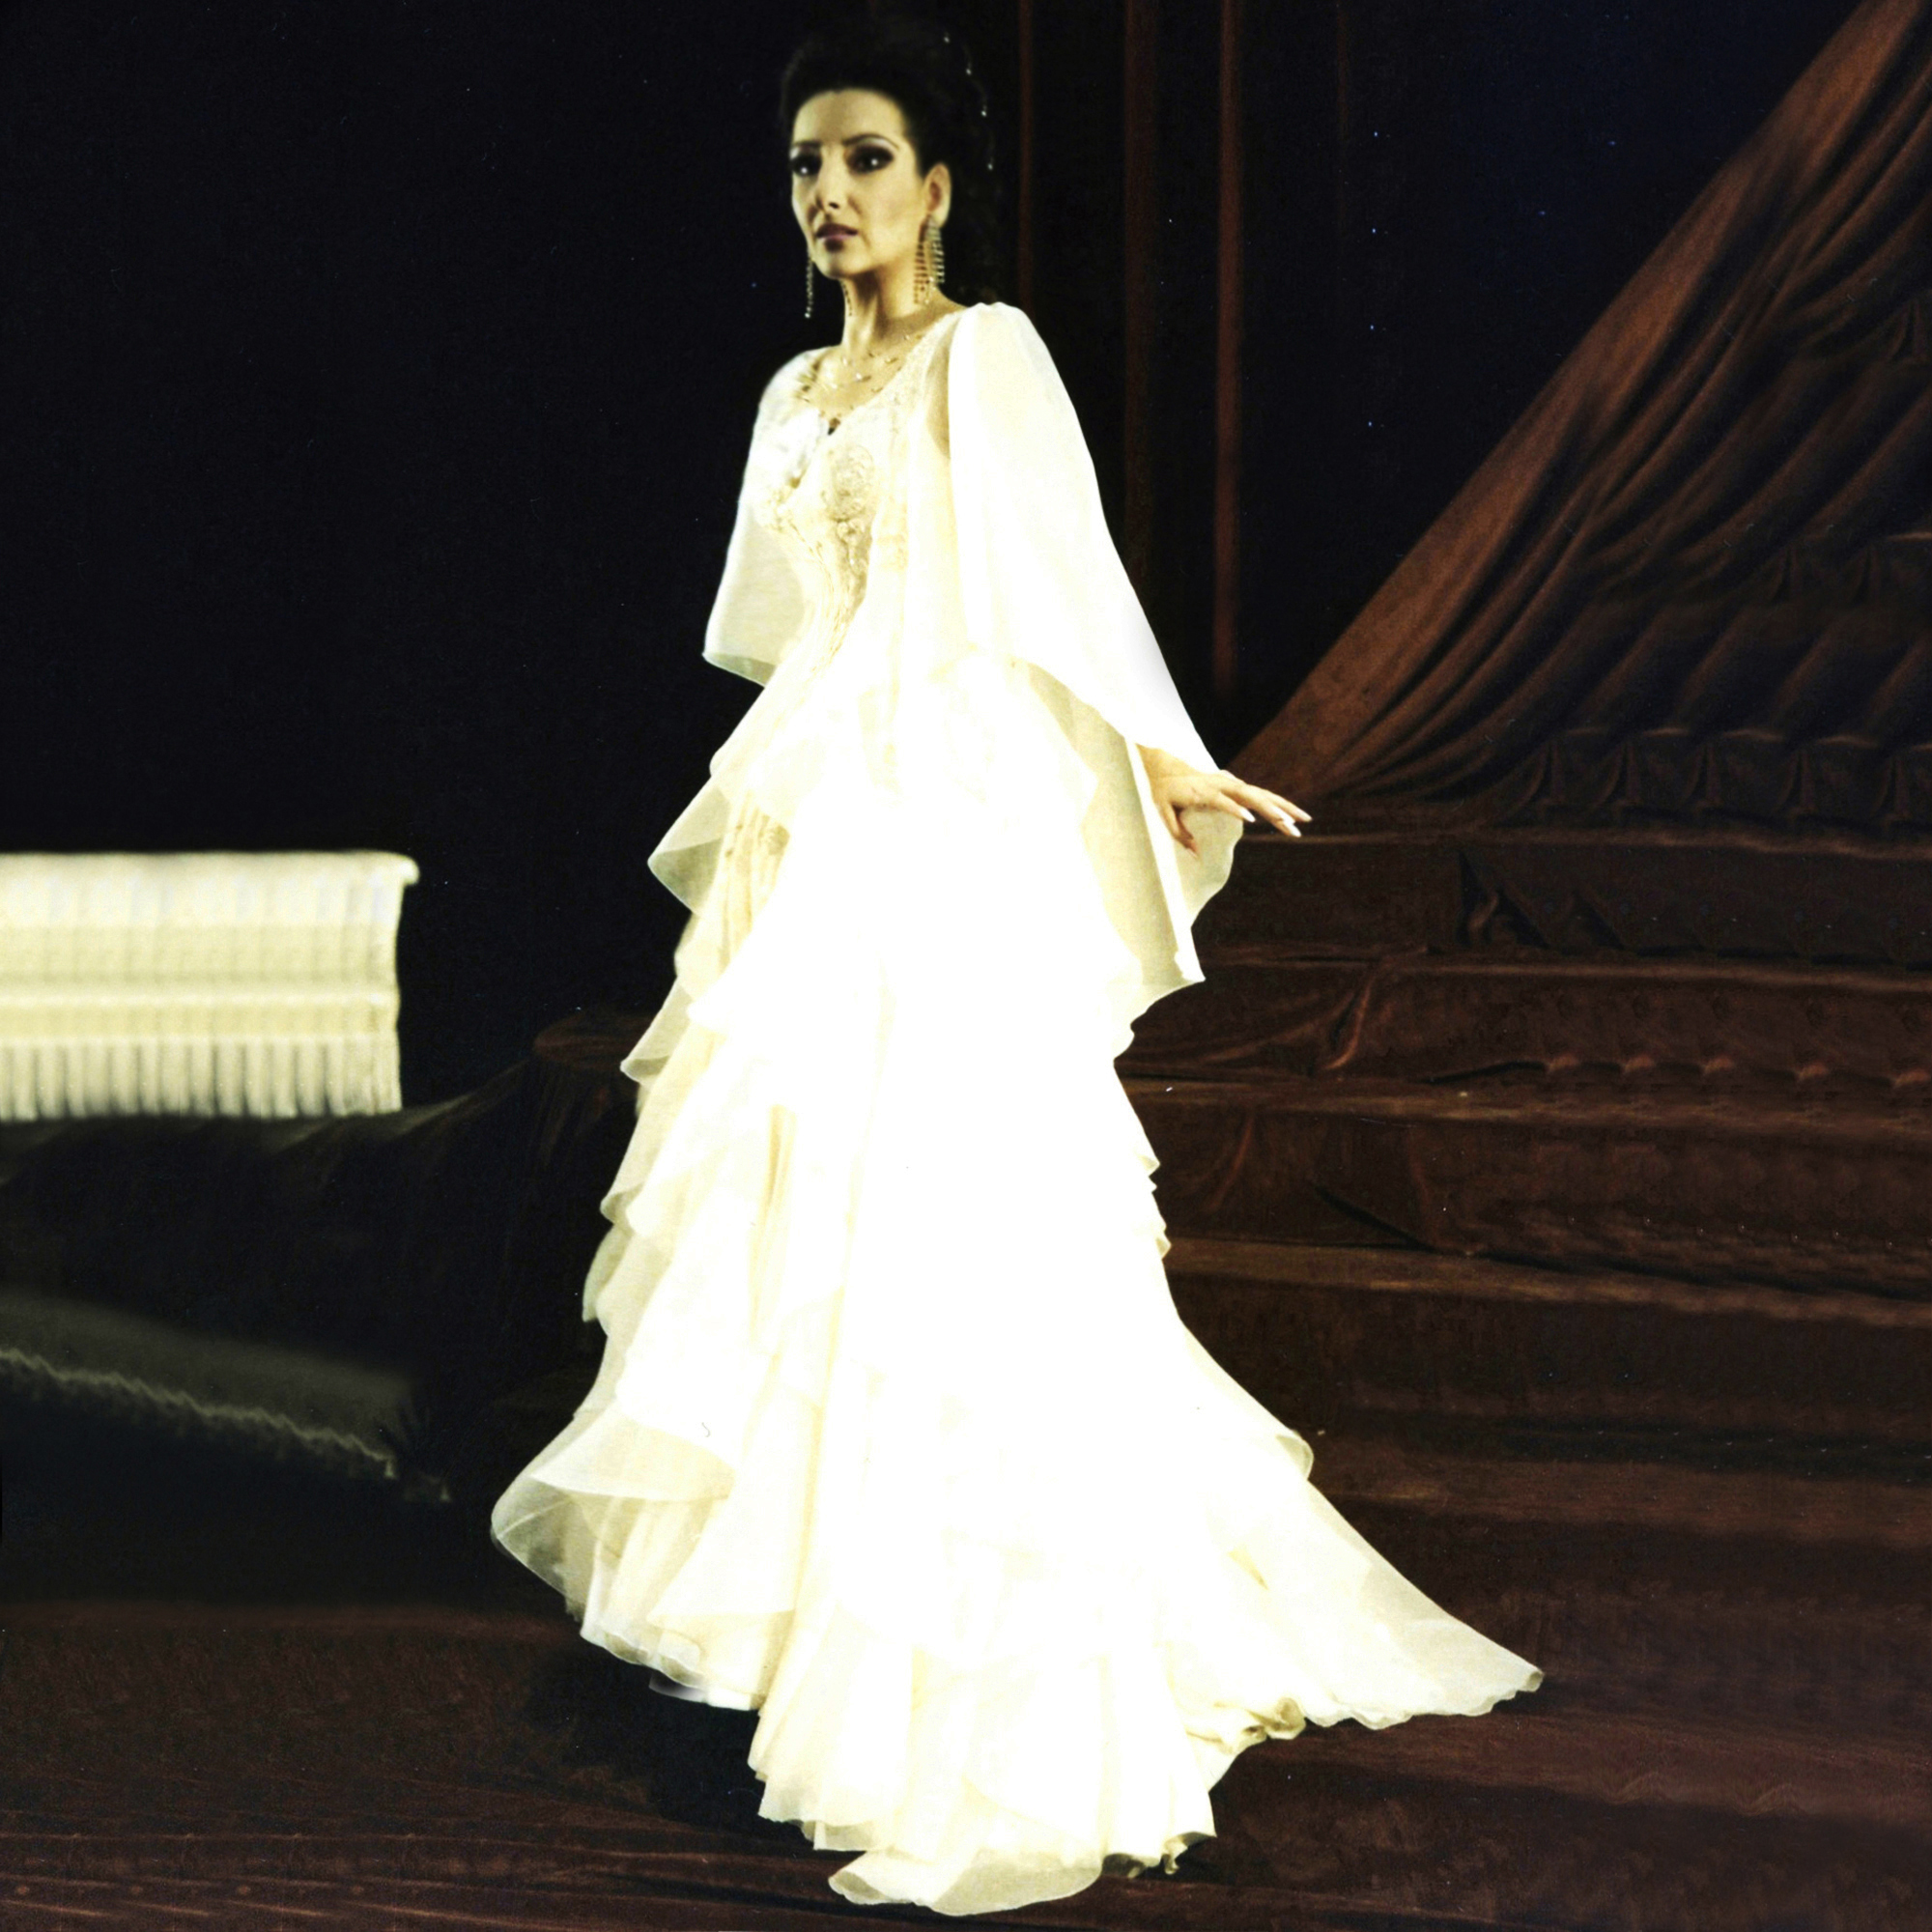 Lucia Aliberti⚘Staatsoper Hannover⚘Hannover⚘Opera⚘"La Traviata”⚘On Stage⚘:http://www.luciaaliberti.it #luciaaliberti #staatsoperhannover #hannover #latraviata #opera #onstage